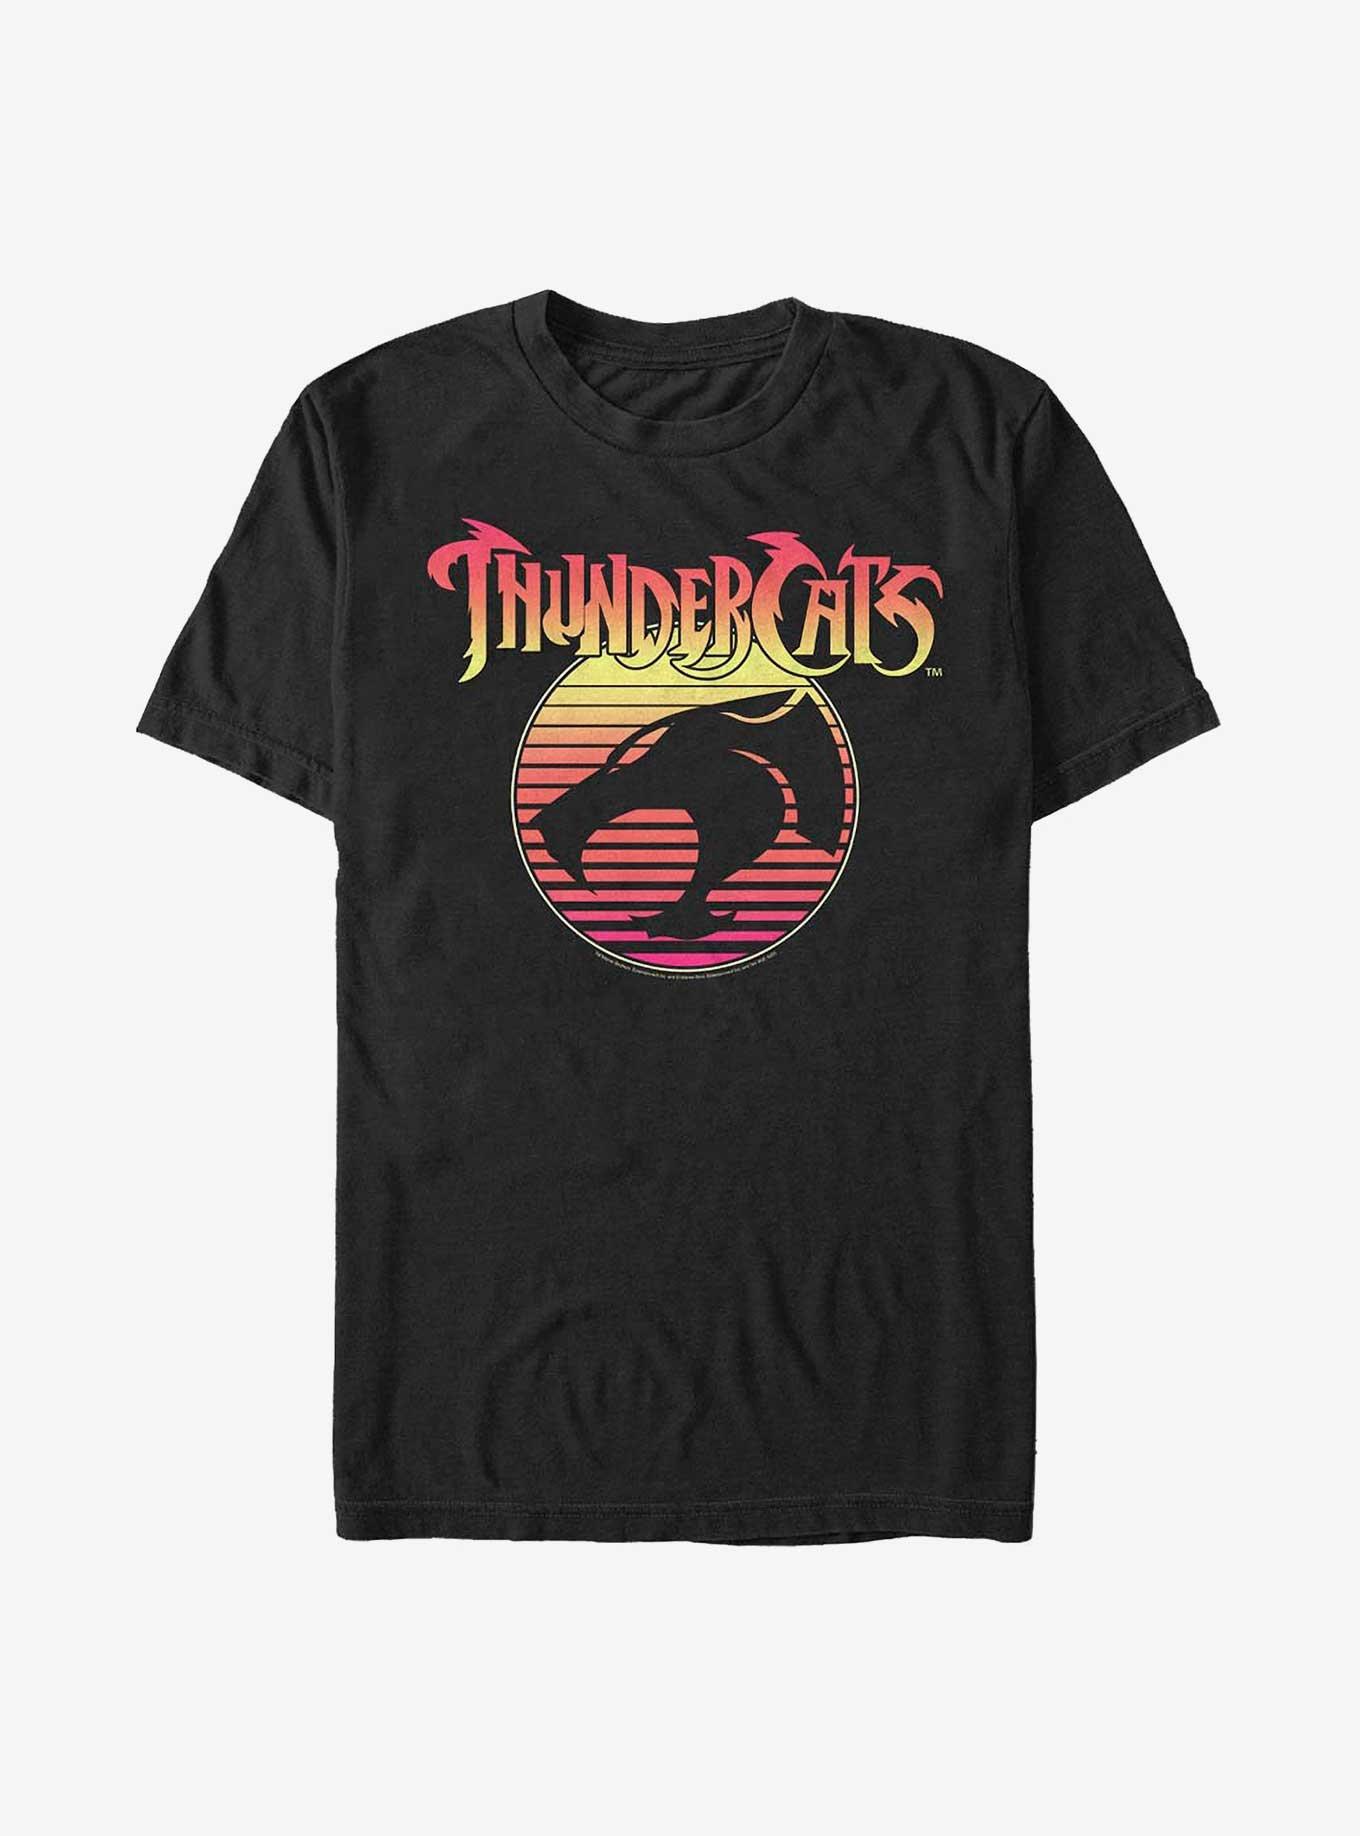 Thundercats 80s Sunset Logo T-Shirt, BLACK, hi-res